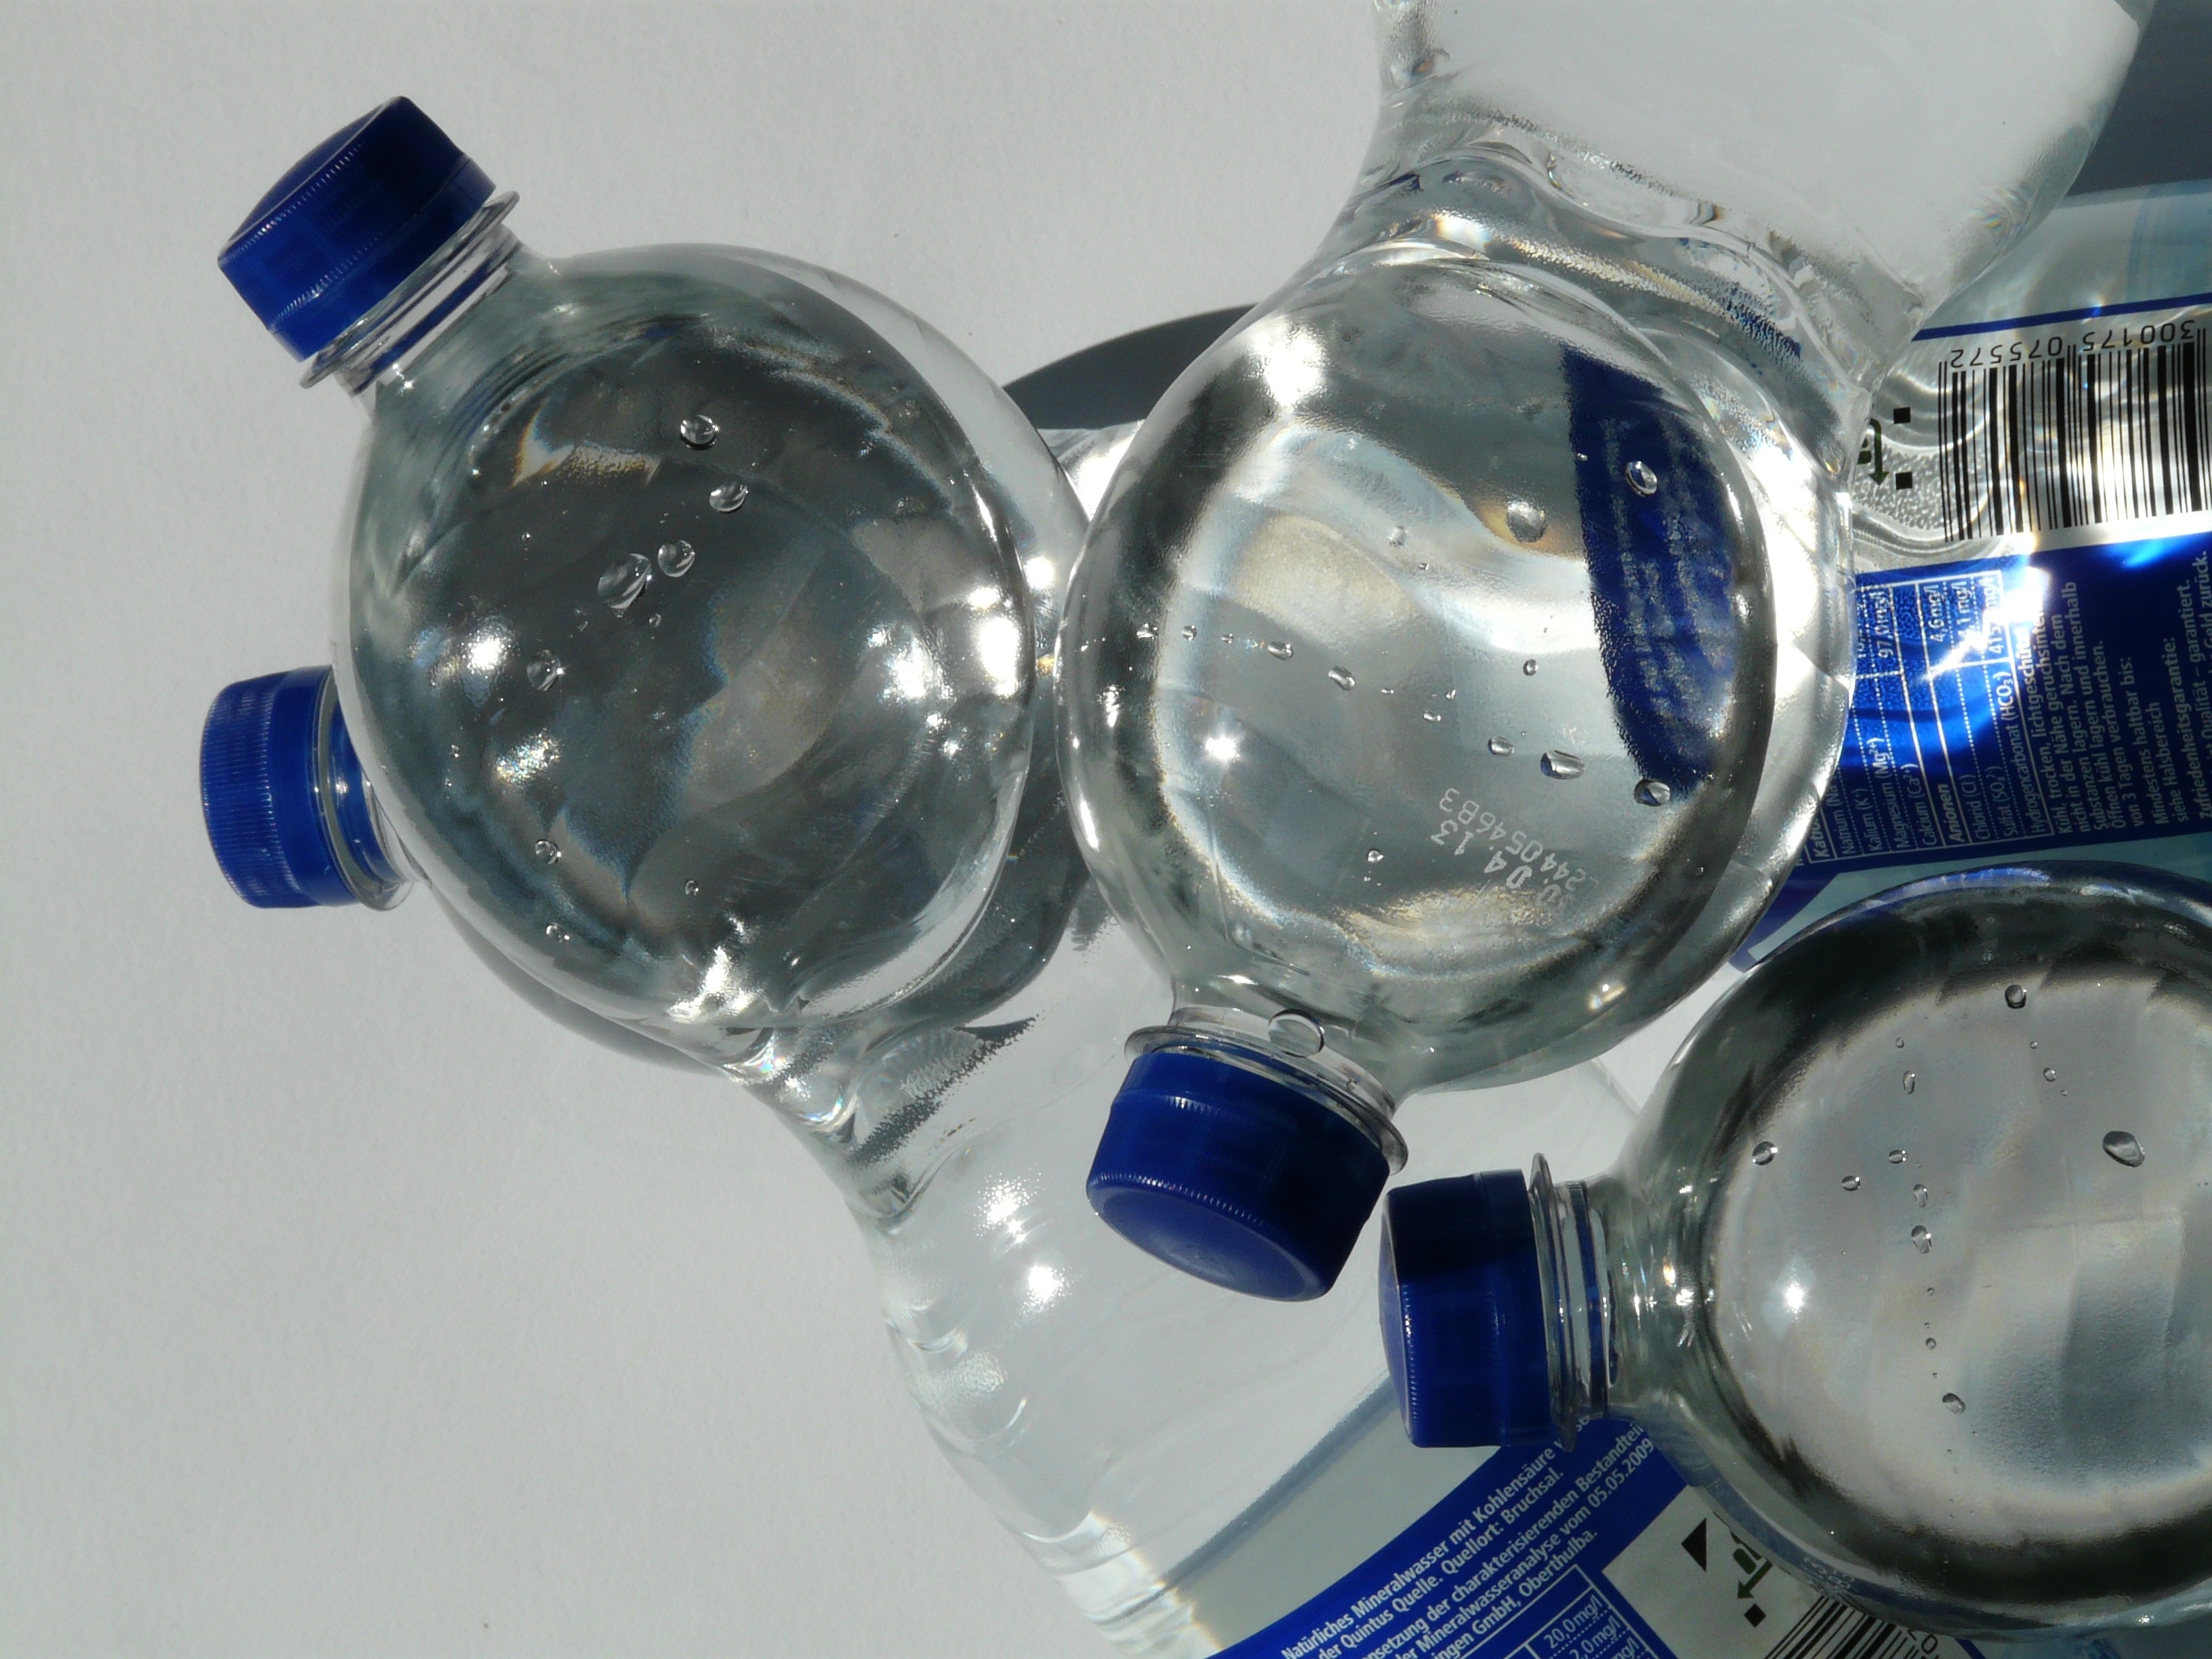 four plastic bottles on white surface